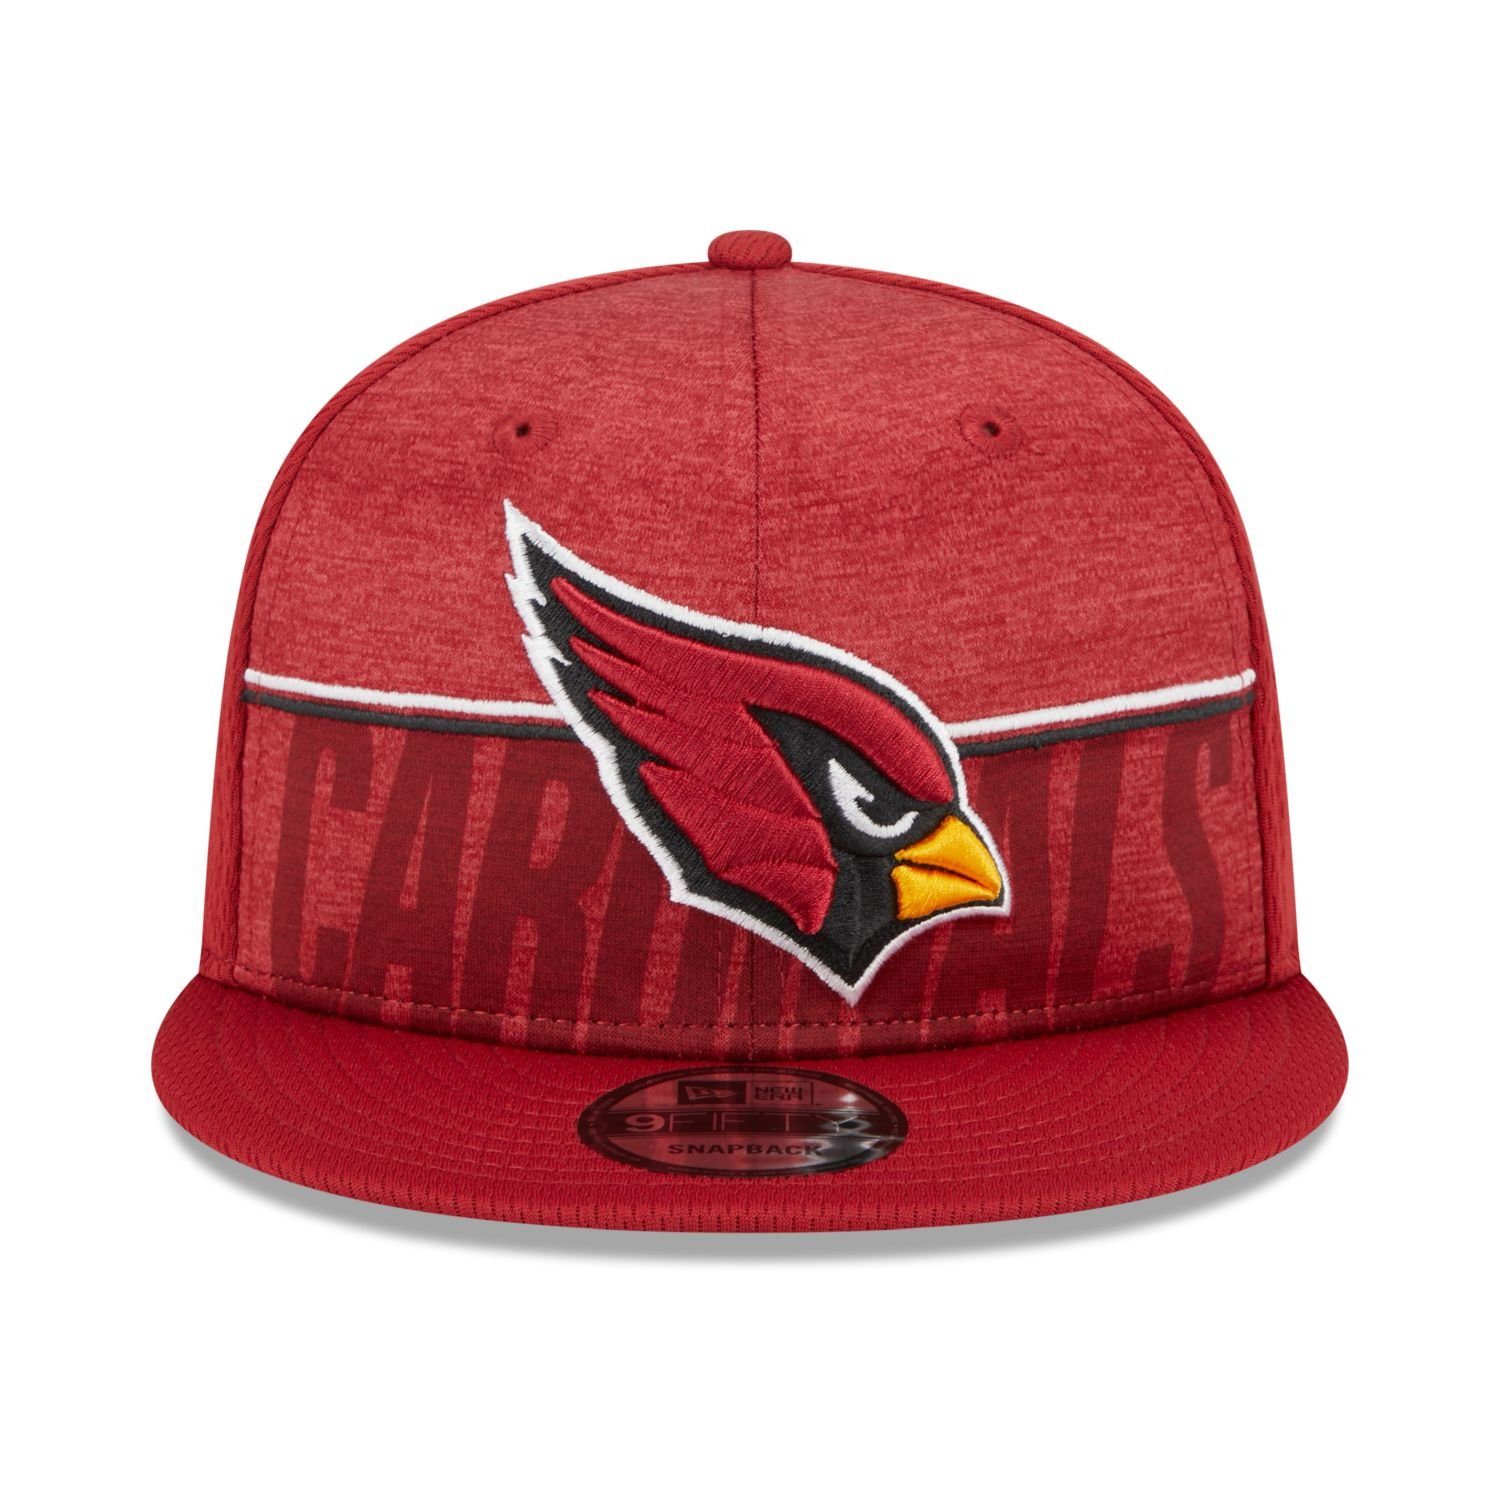 New Era Snapback Cap Arizona TRAINING 9FIFTY Cardinals